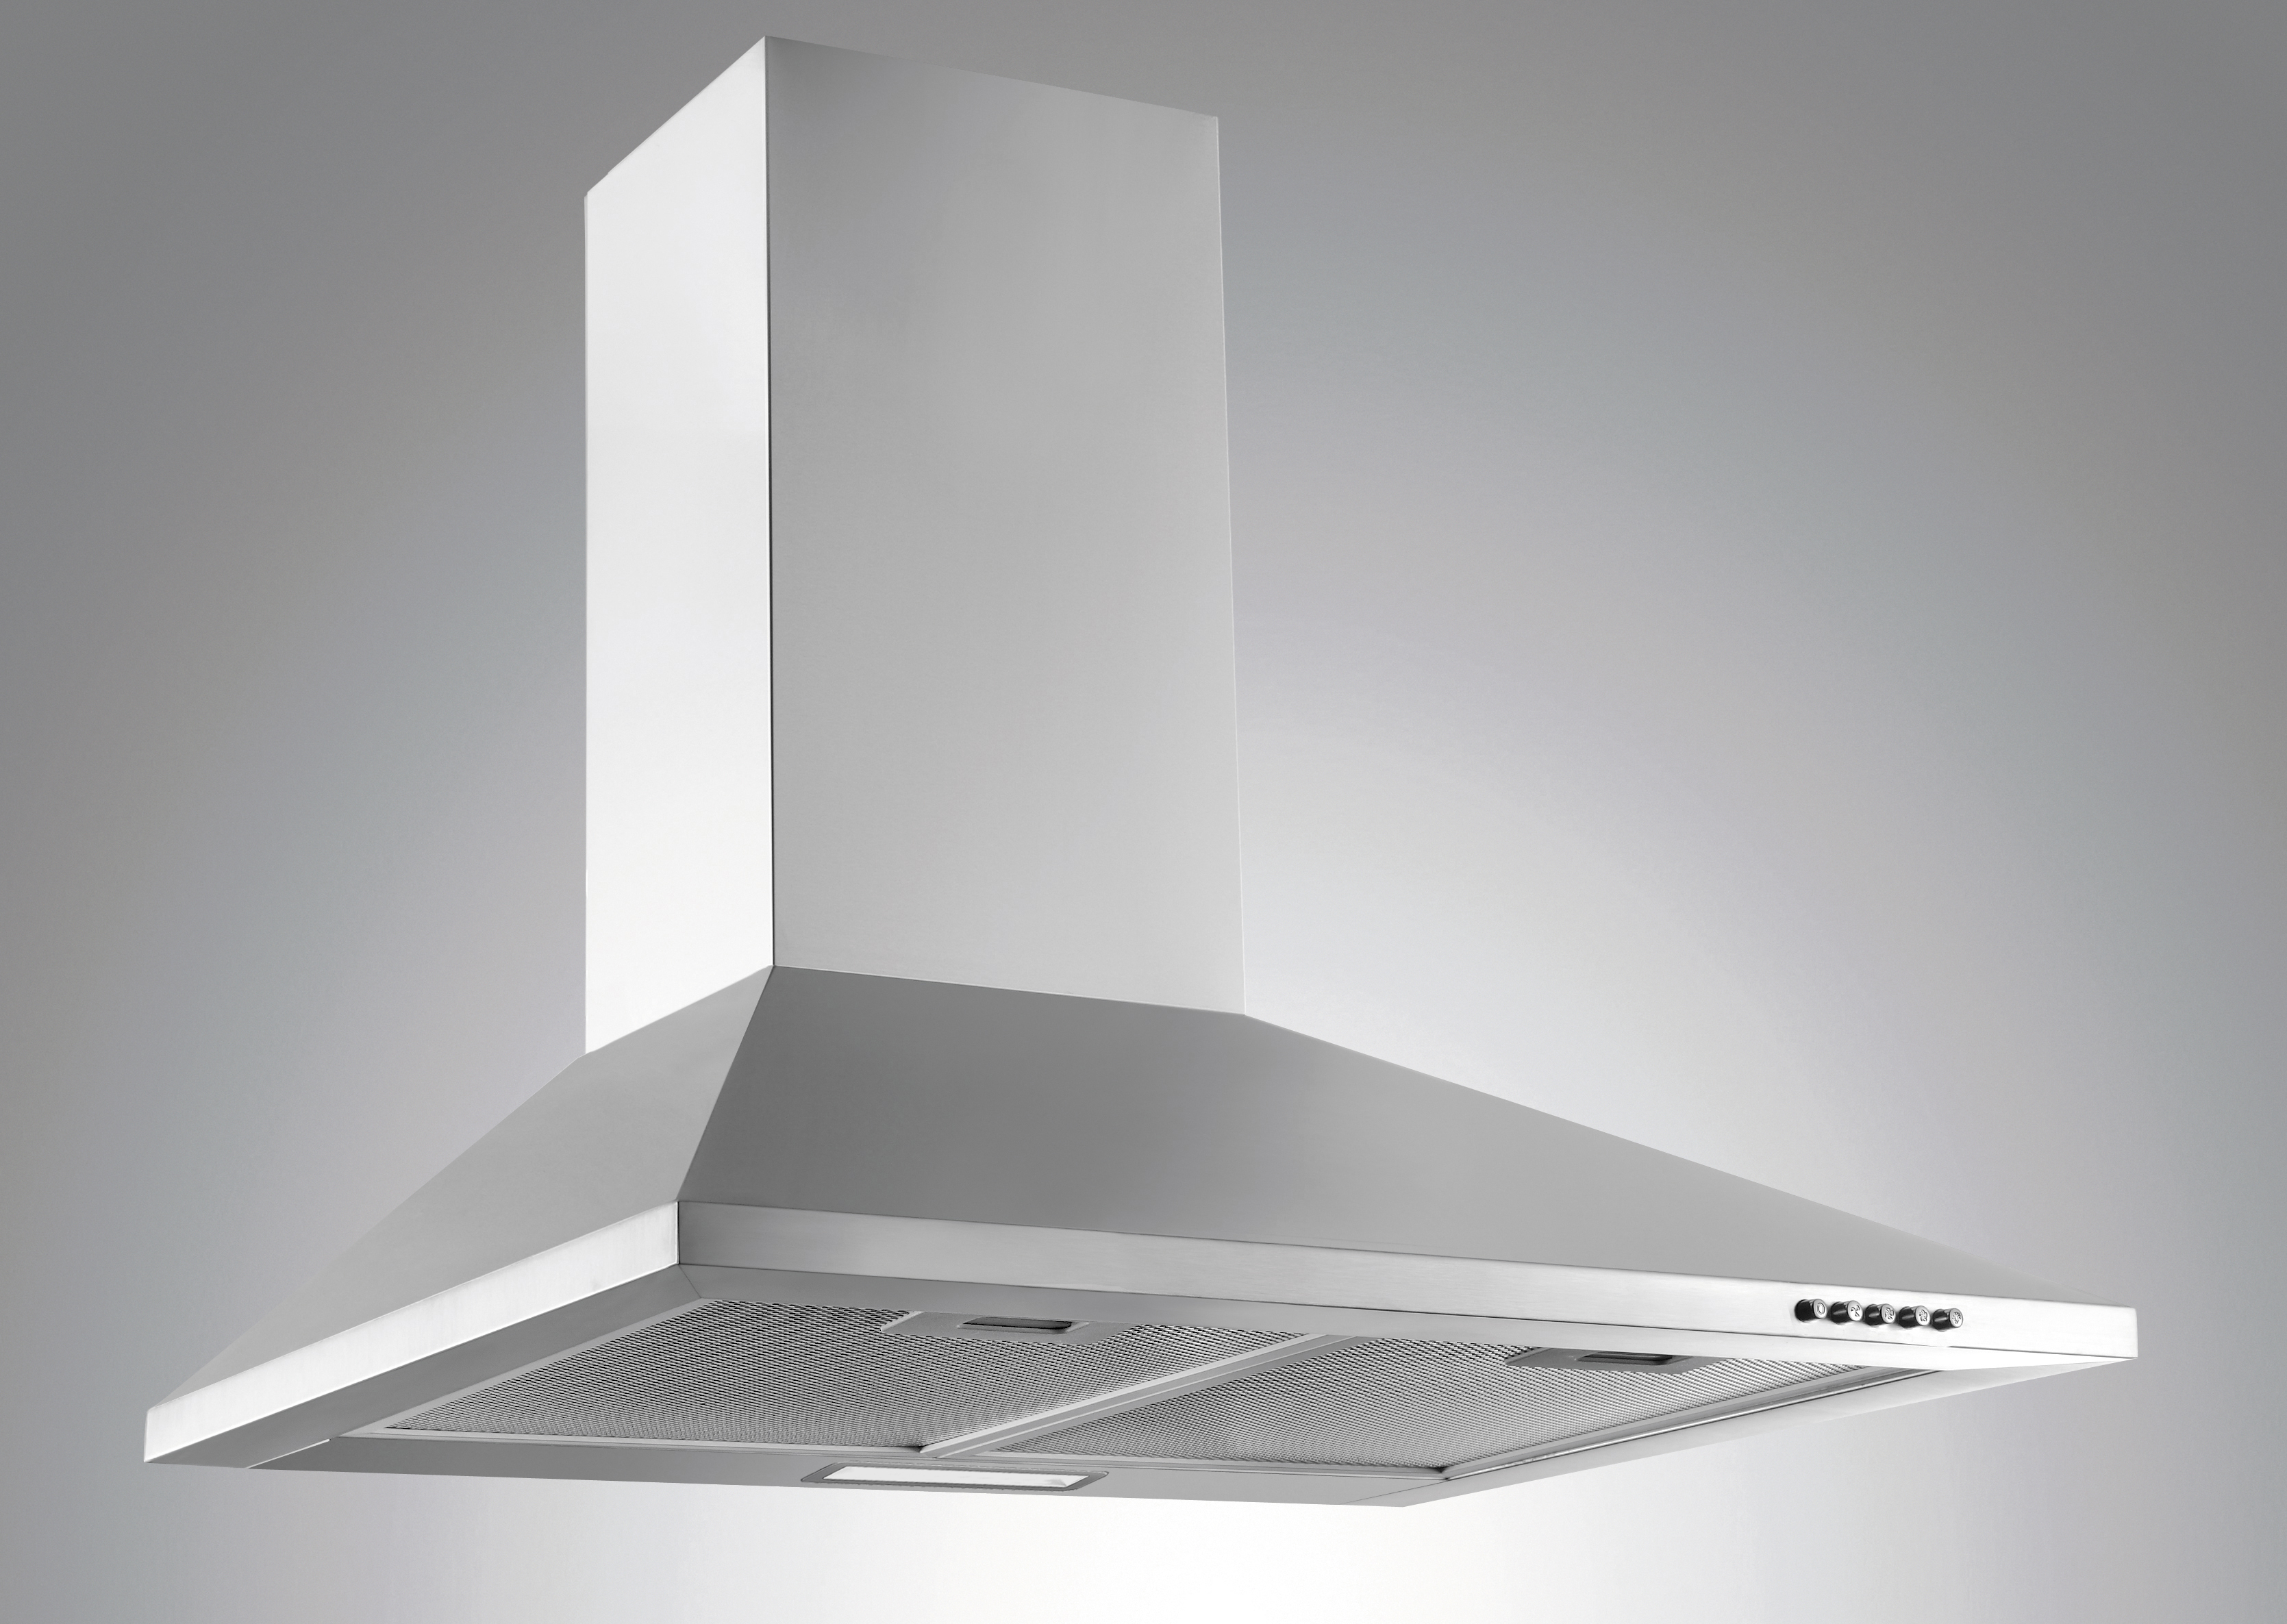 Menke Küchenzeile mit E-Geräten & Geschirrspüler - 300 cm breit – Smart Lack Hochglanz Lava